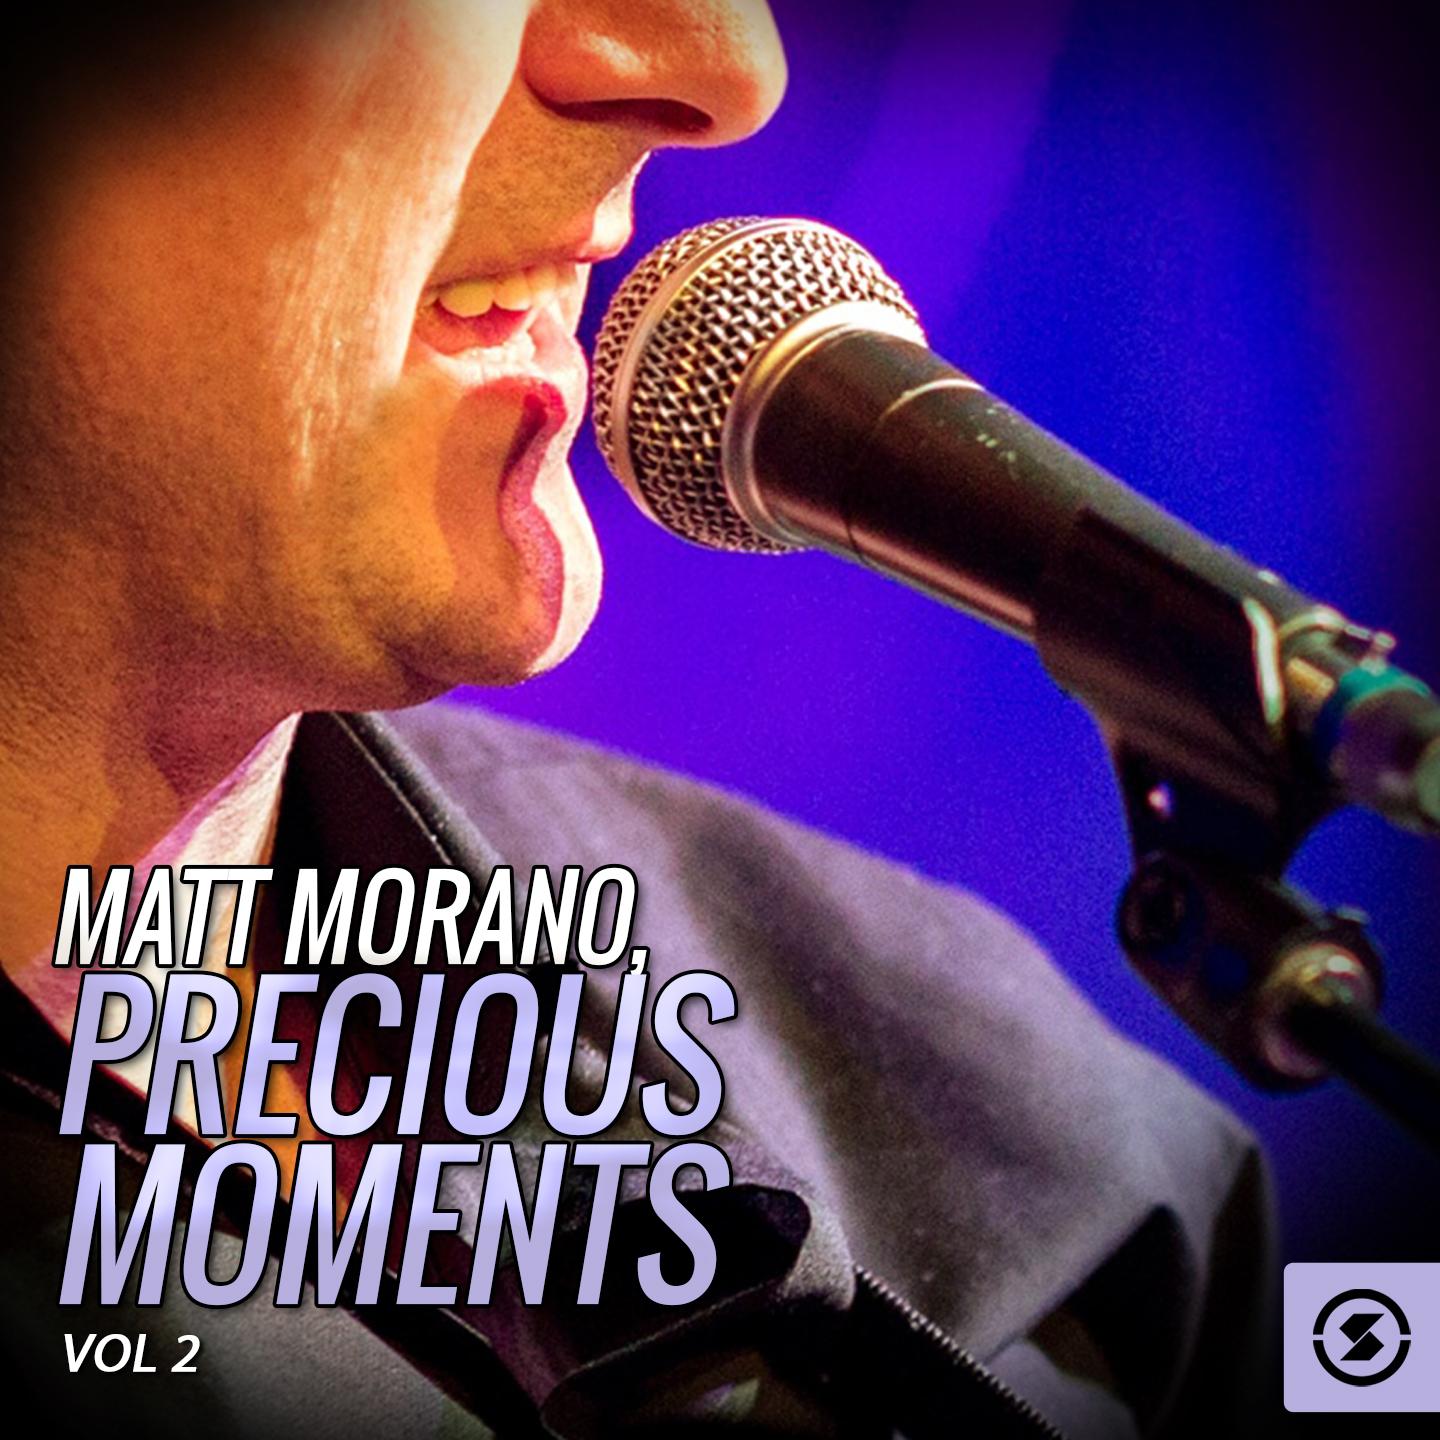 Matt Morano, Precious Moments, Vol. 2